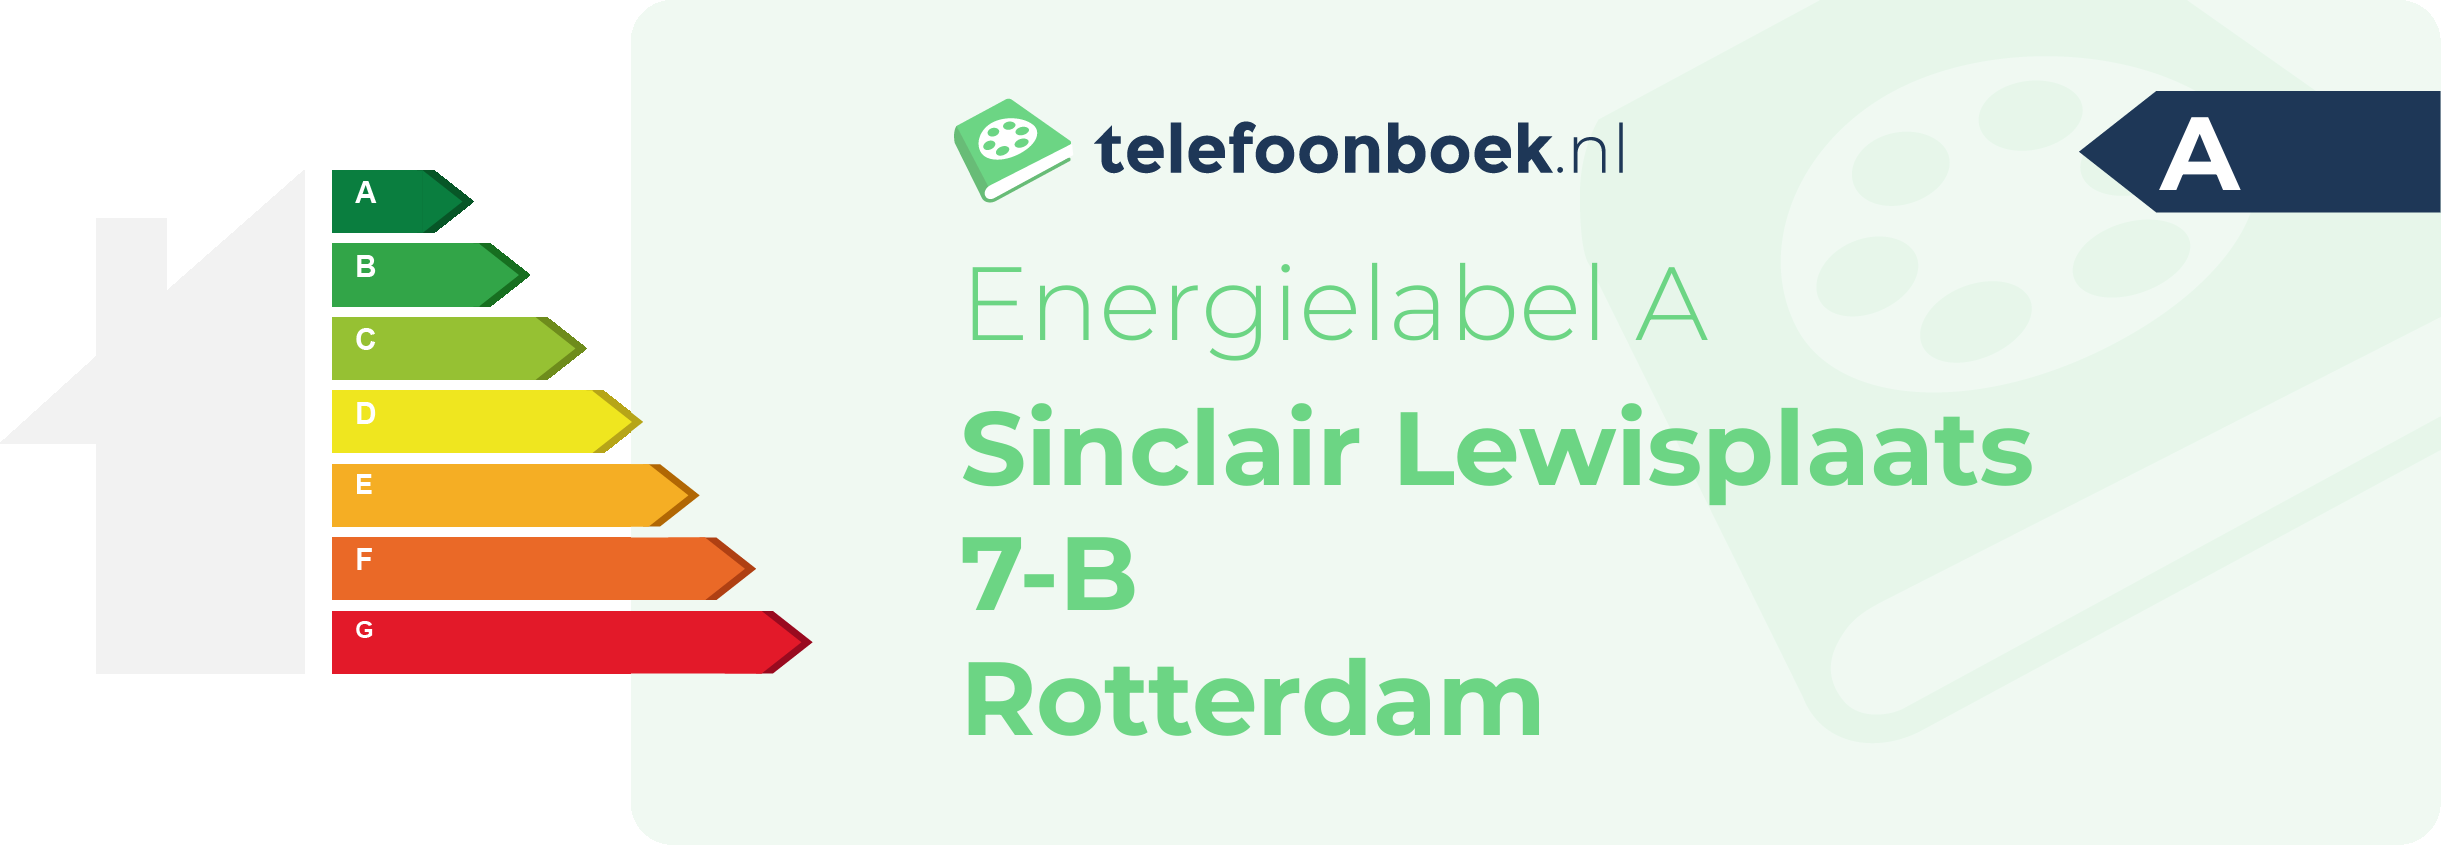 Energielabel Sinclair Lewisplaats 7-B Rotterdam